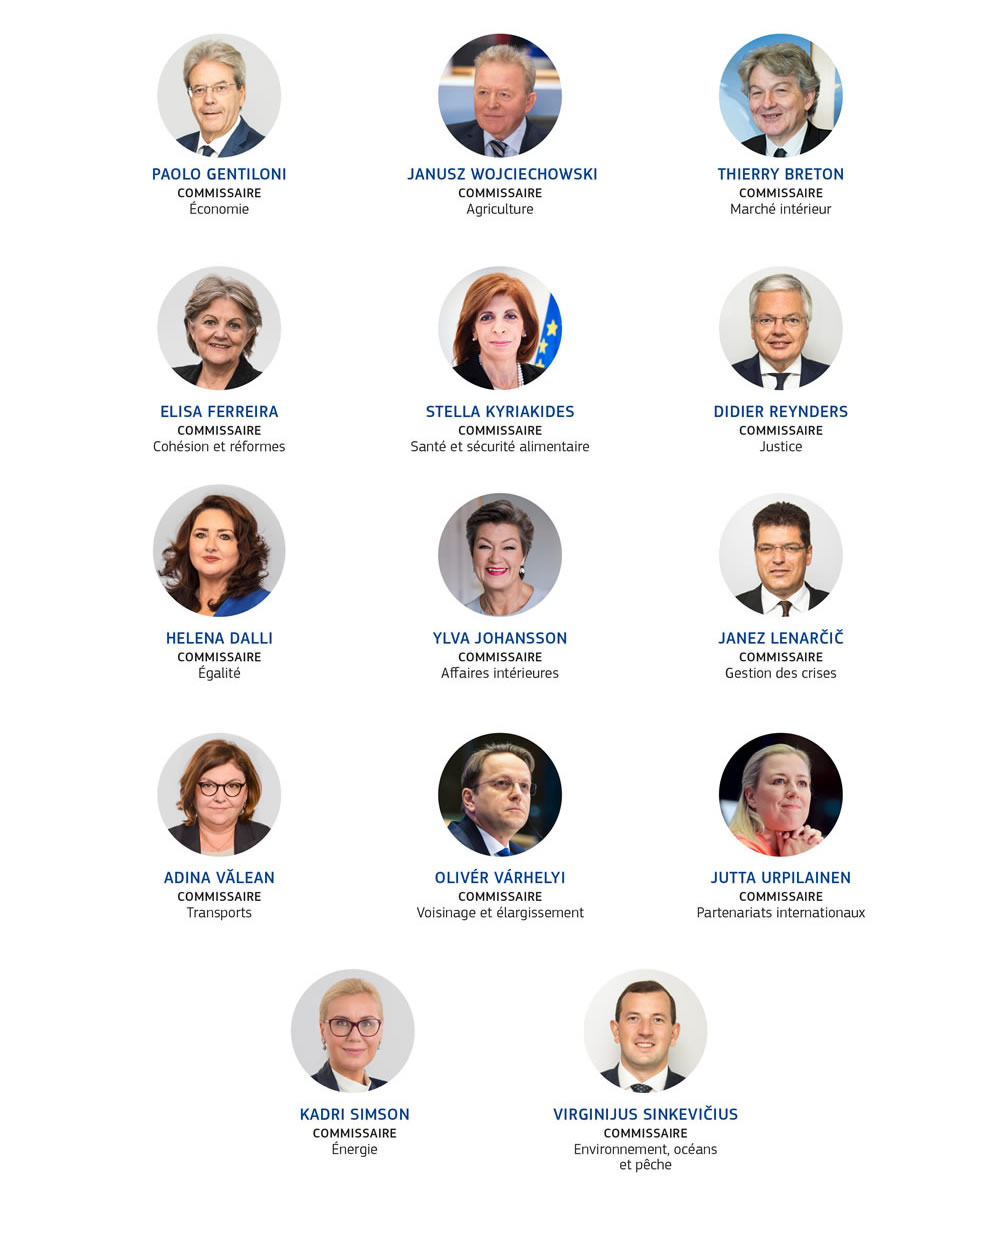 Portraits et portefeuilles des différents membres du collège des commissaires entre 2019 et 2024.